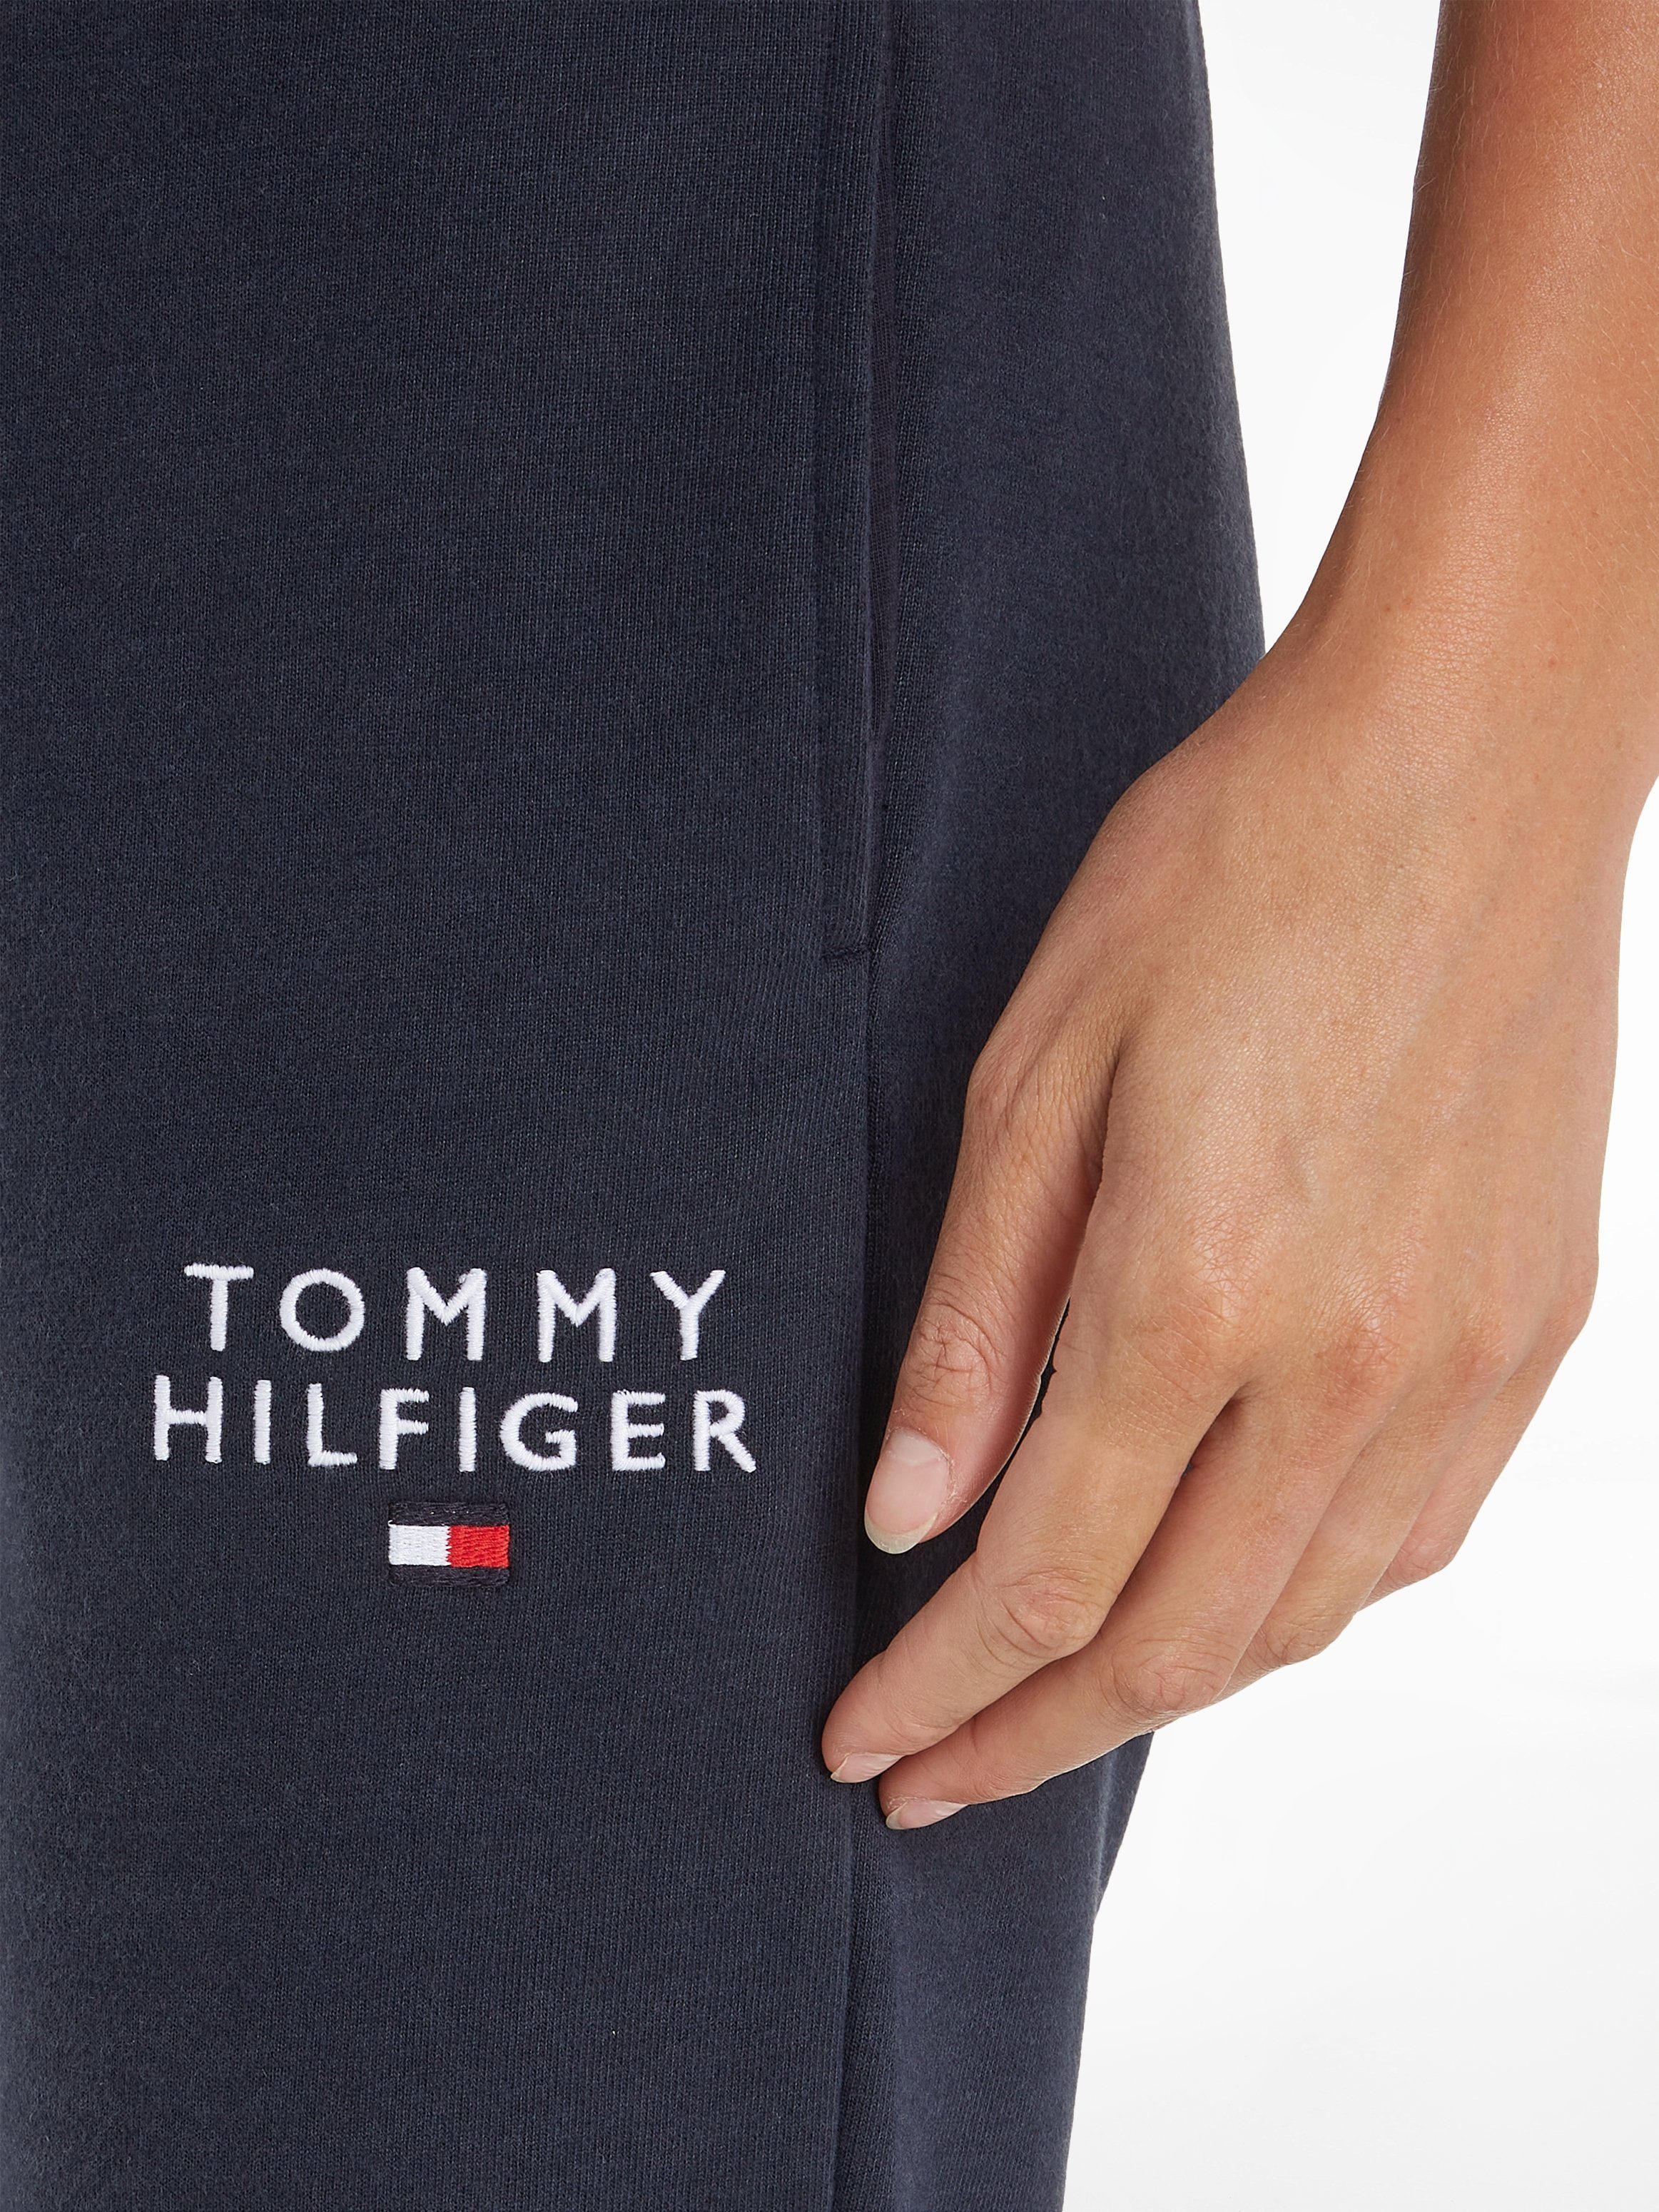 TRACK Tommy Sweathose PANTS Underwear Hilfiger Tommy Markenlogo-Aufdruck Hilfiger mit